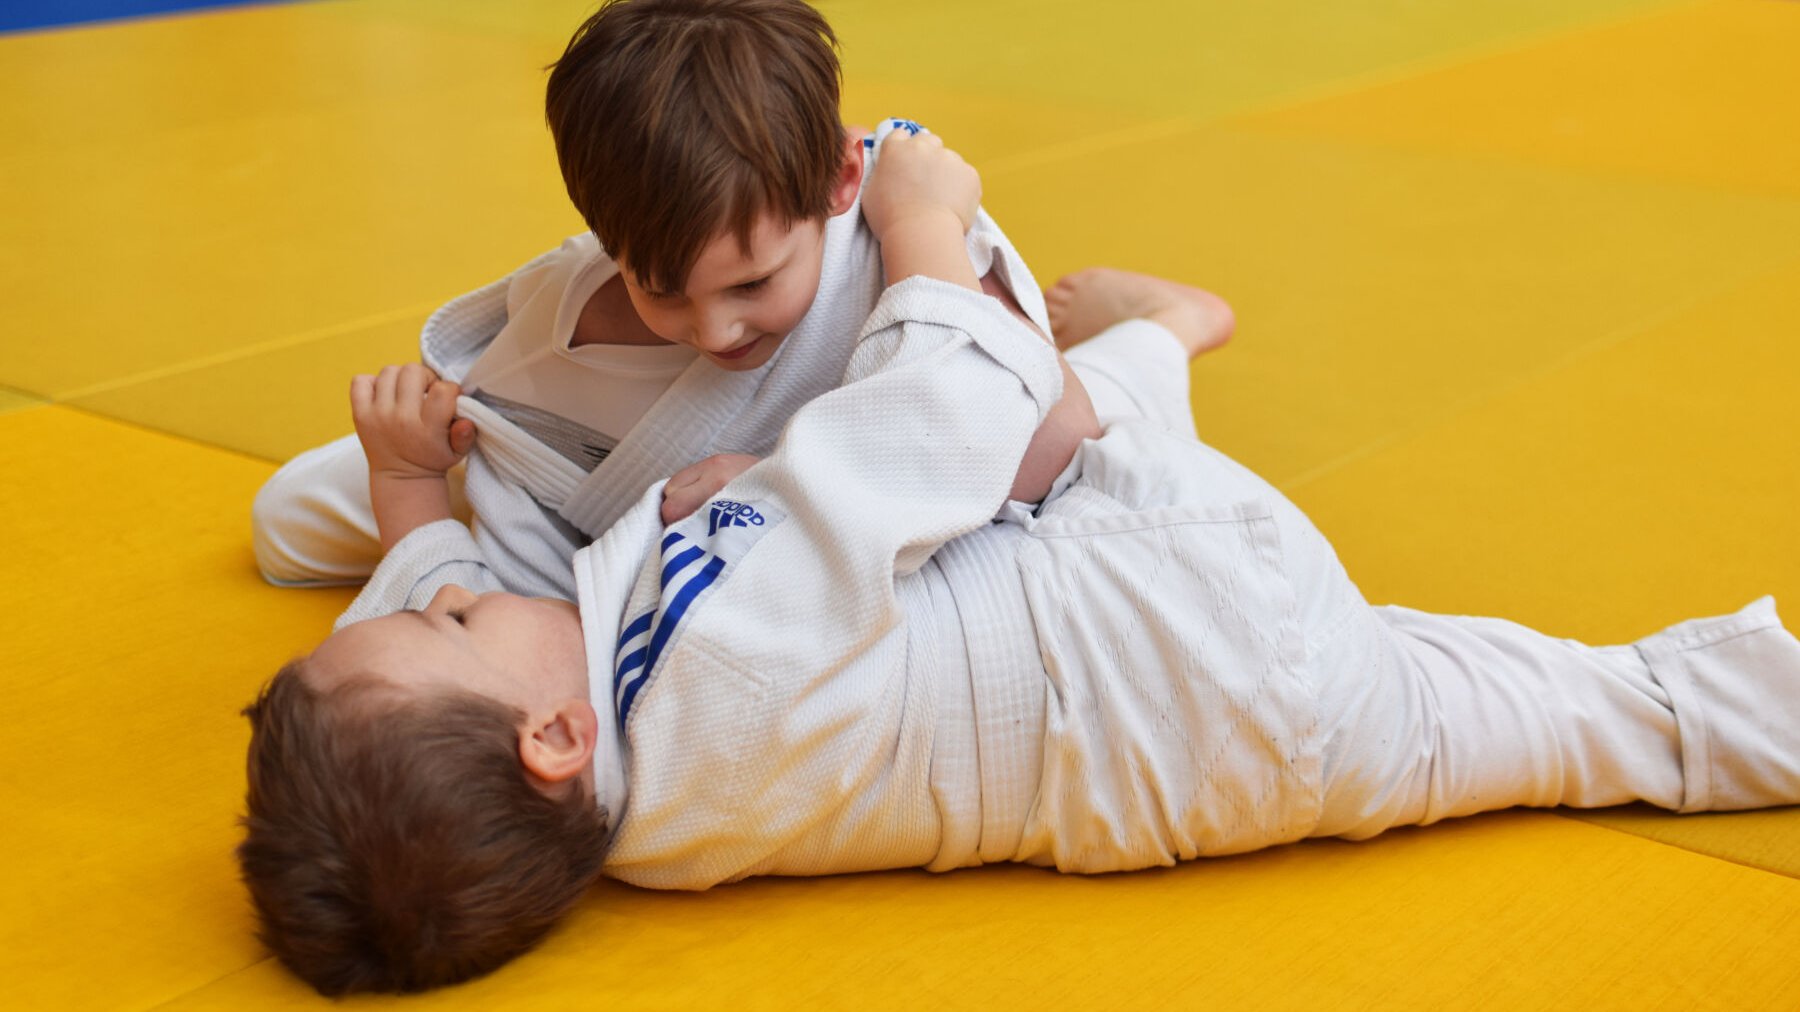 chłopcy w białych judogach podczas walki